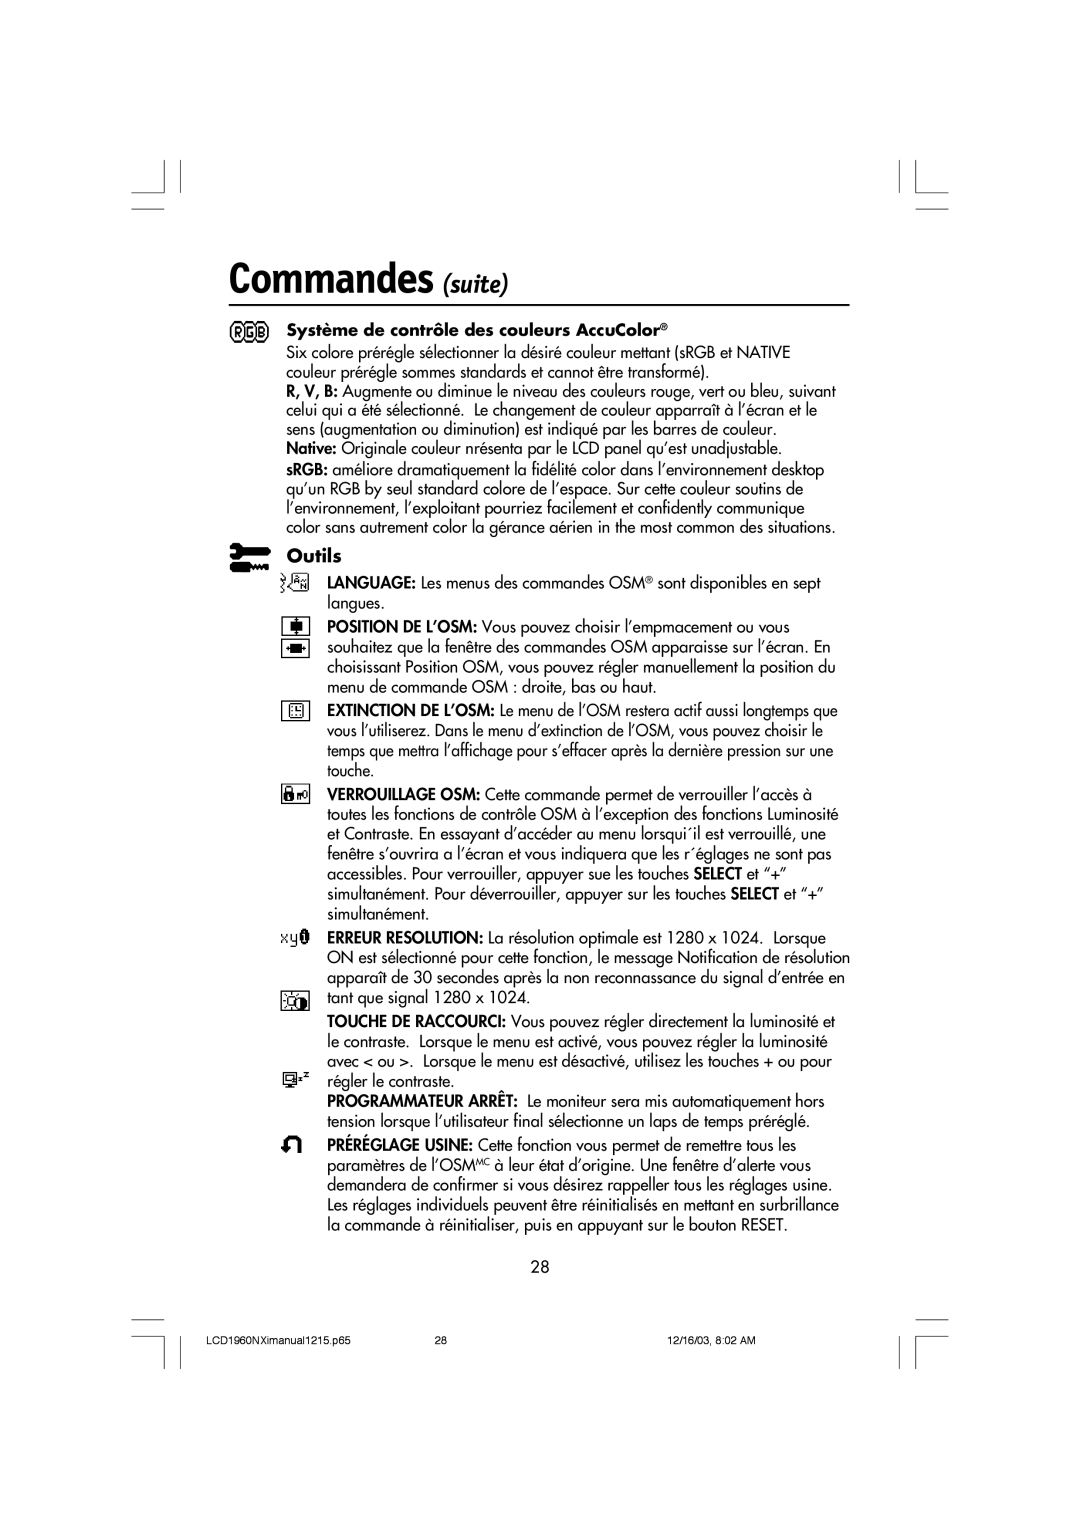 NEC LCD1960NXI manual Commandes suite, Outils, Système de contrôle des couleurs AccuColor 